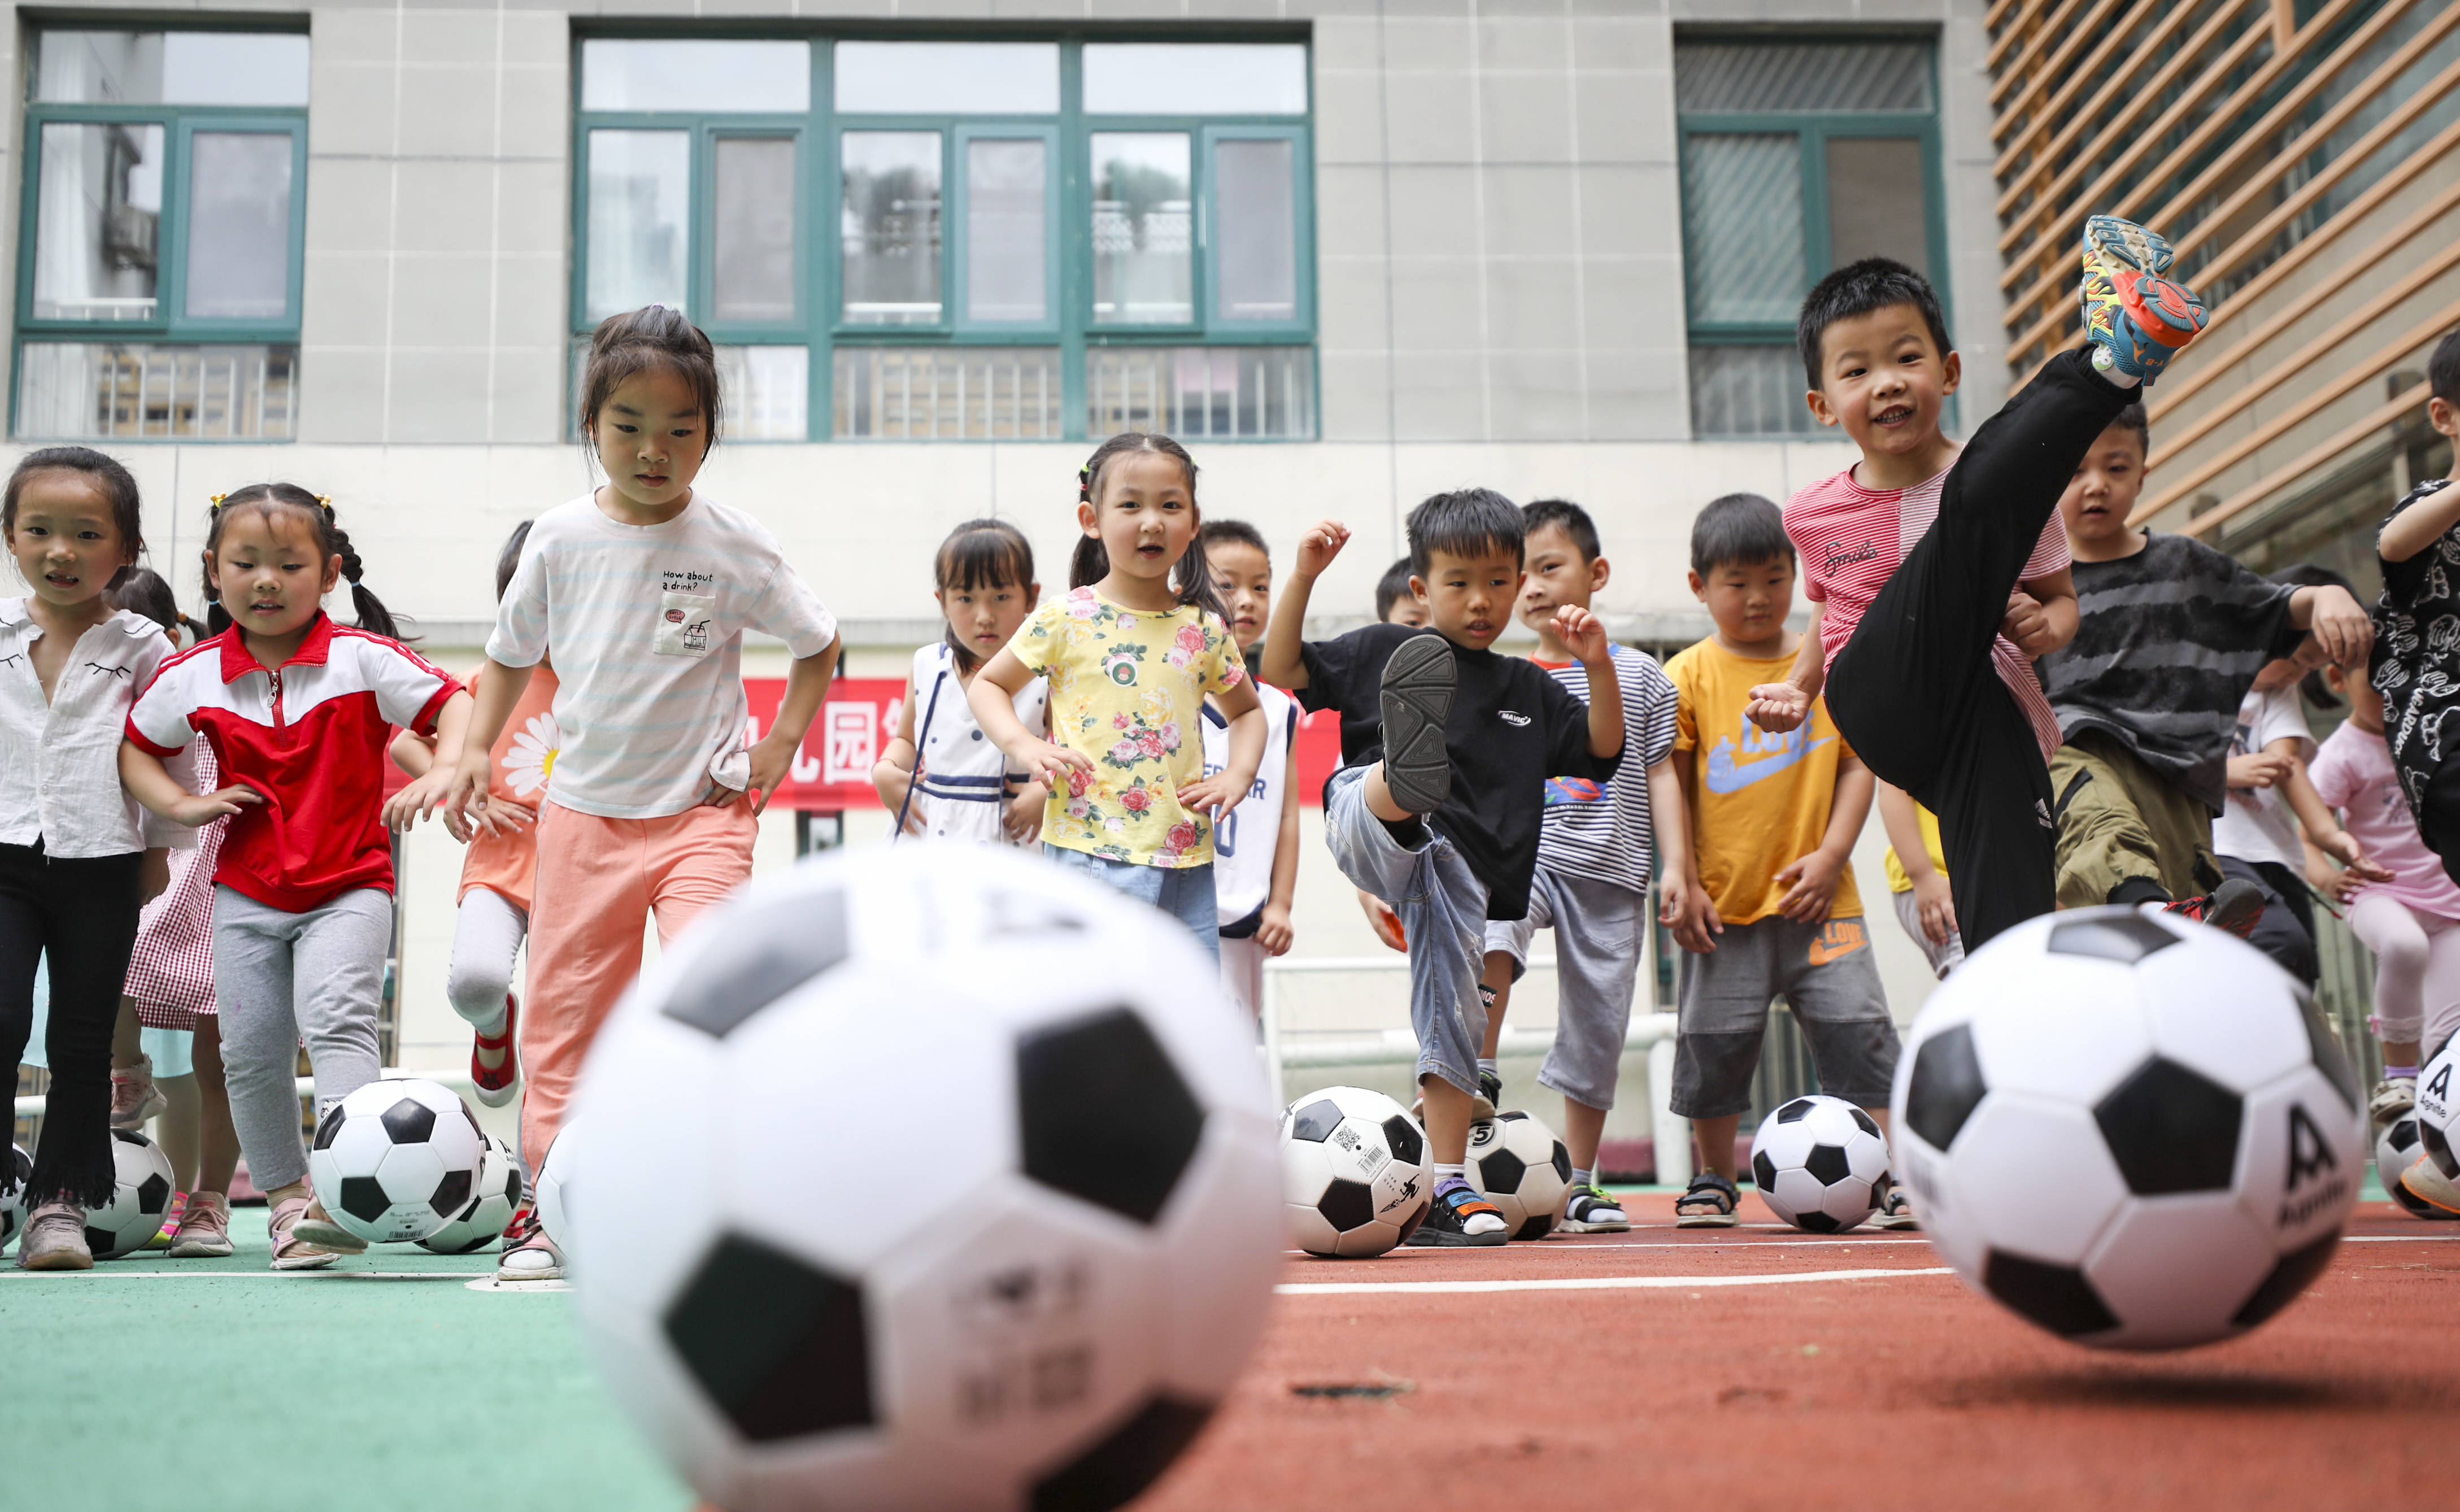 7月14日,幼儿园小朋友在踢足球.